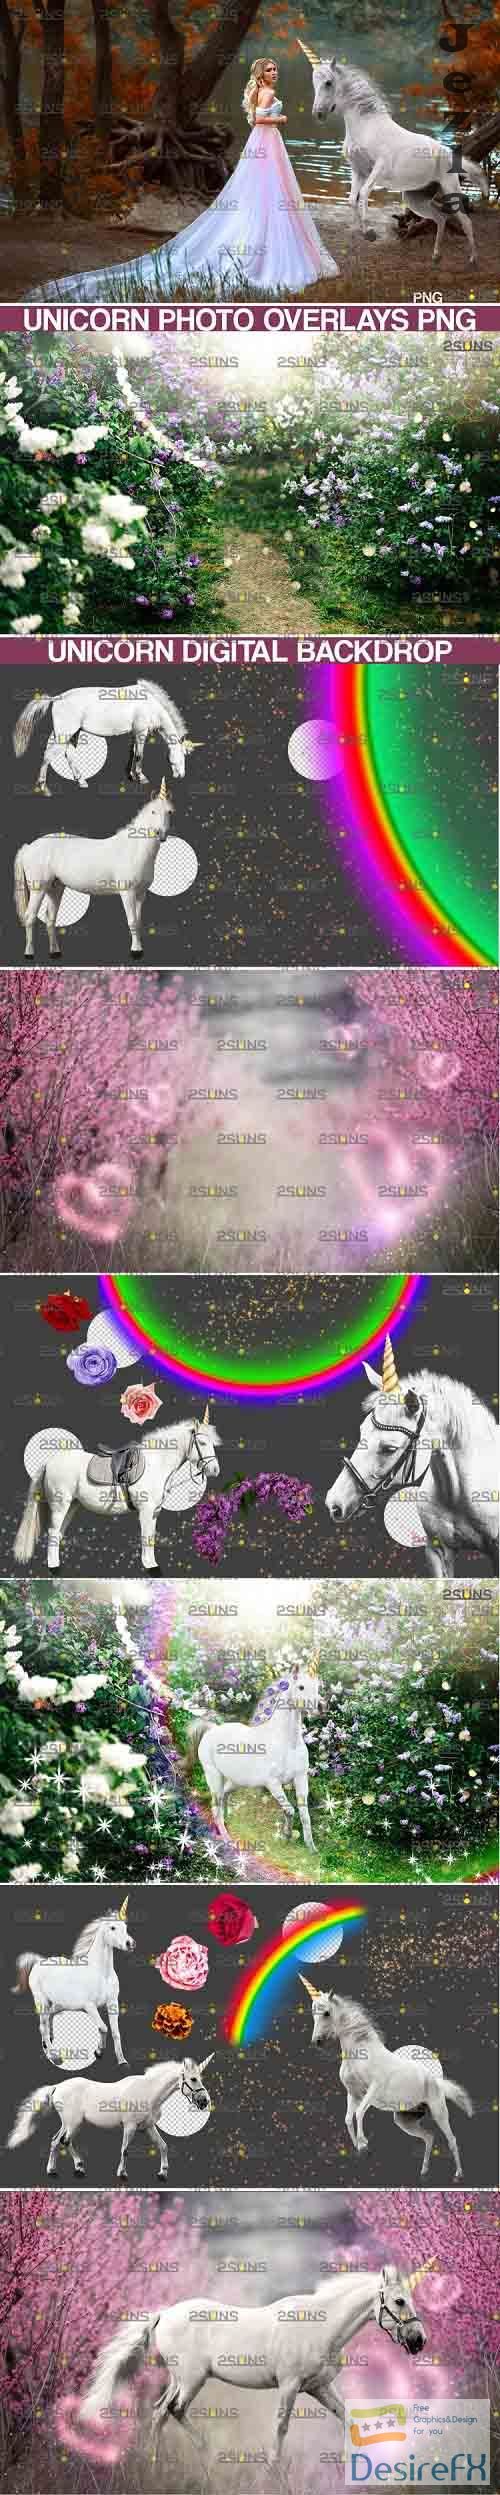 Unicorn overlay &amp; Flower backdrop, White Horse png overlays - 738331